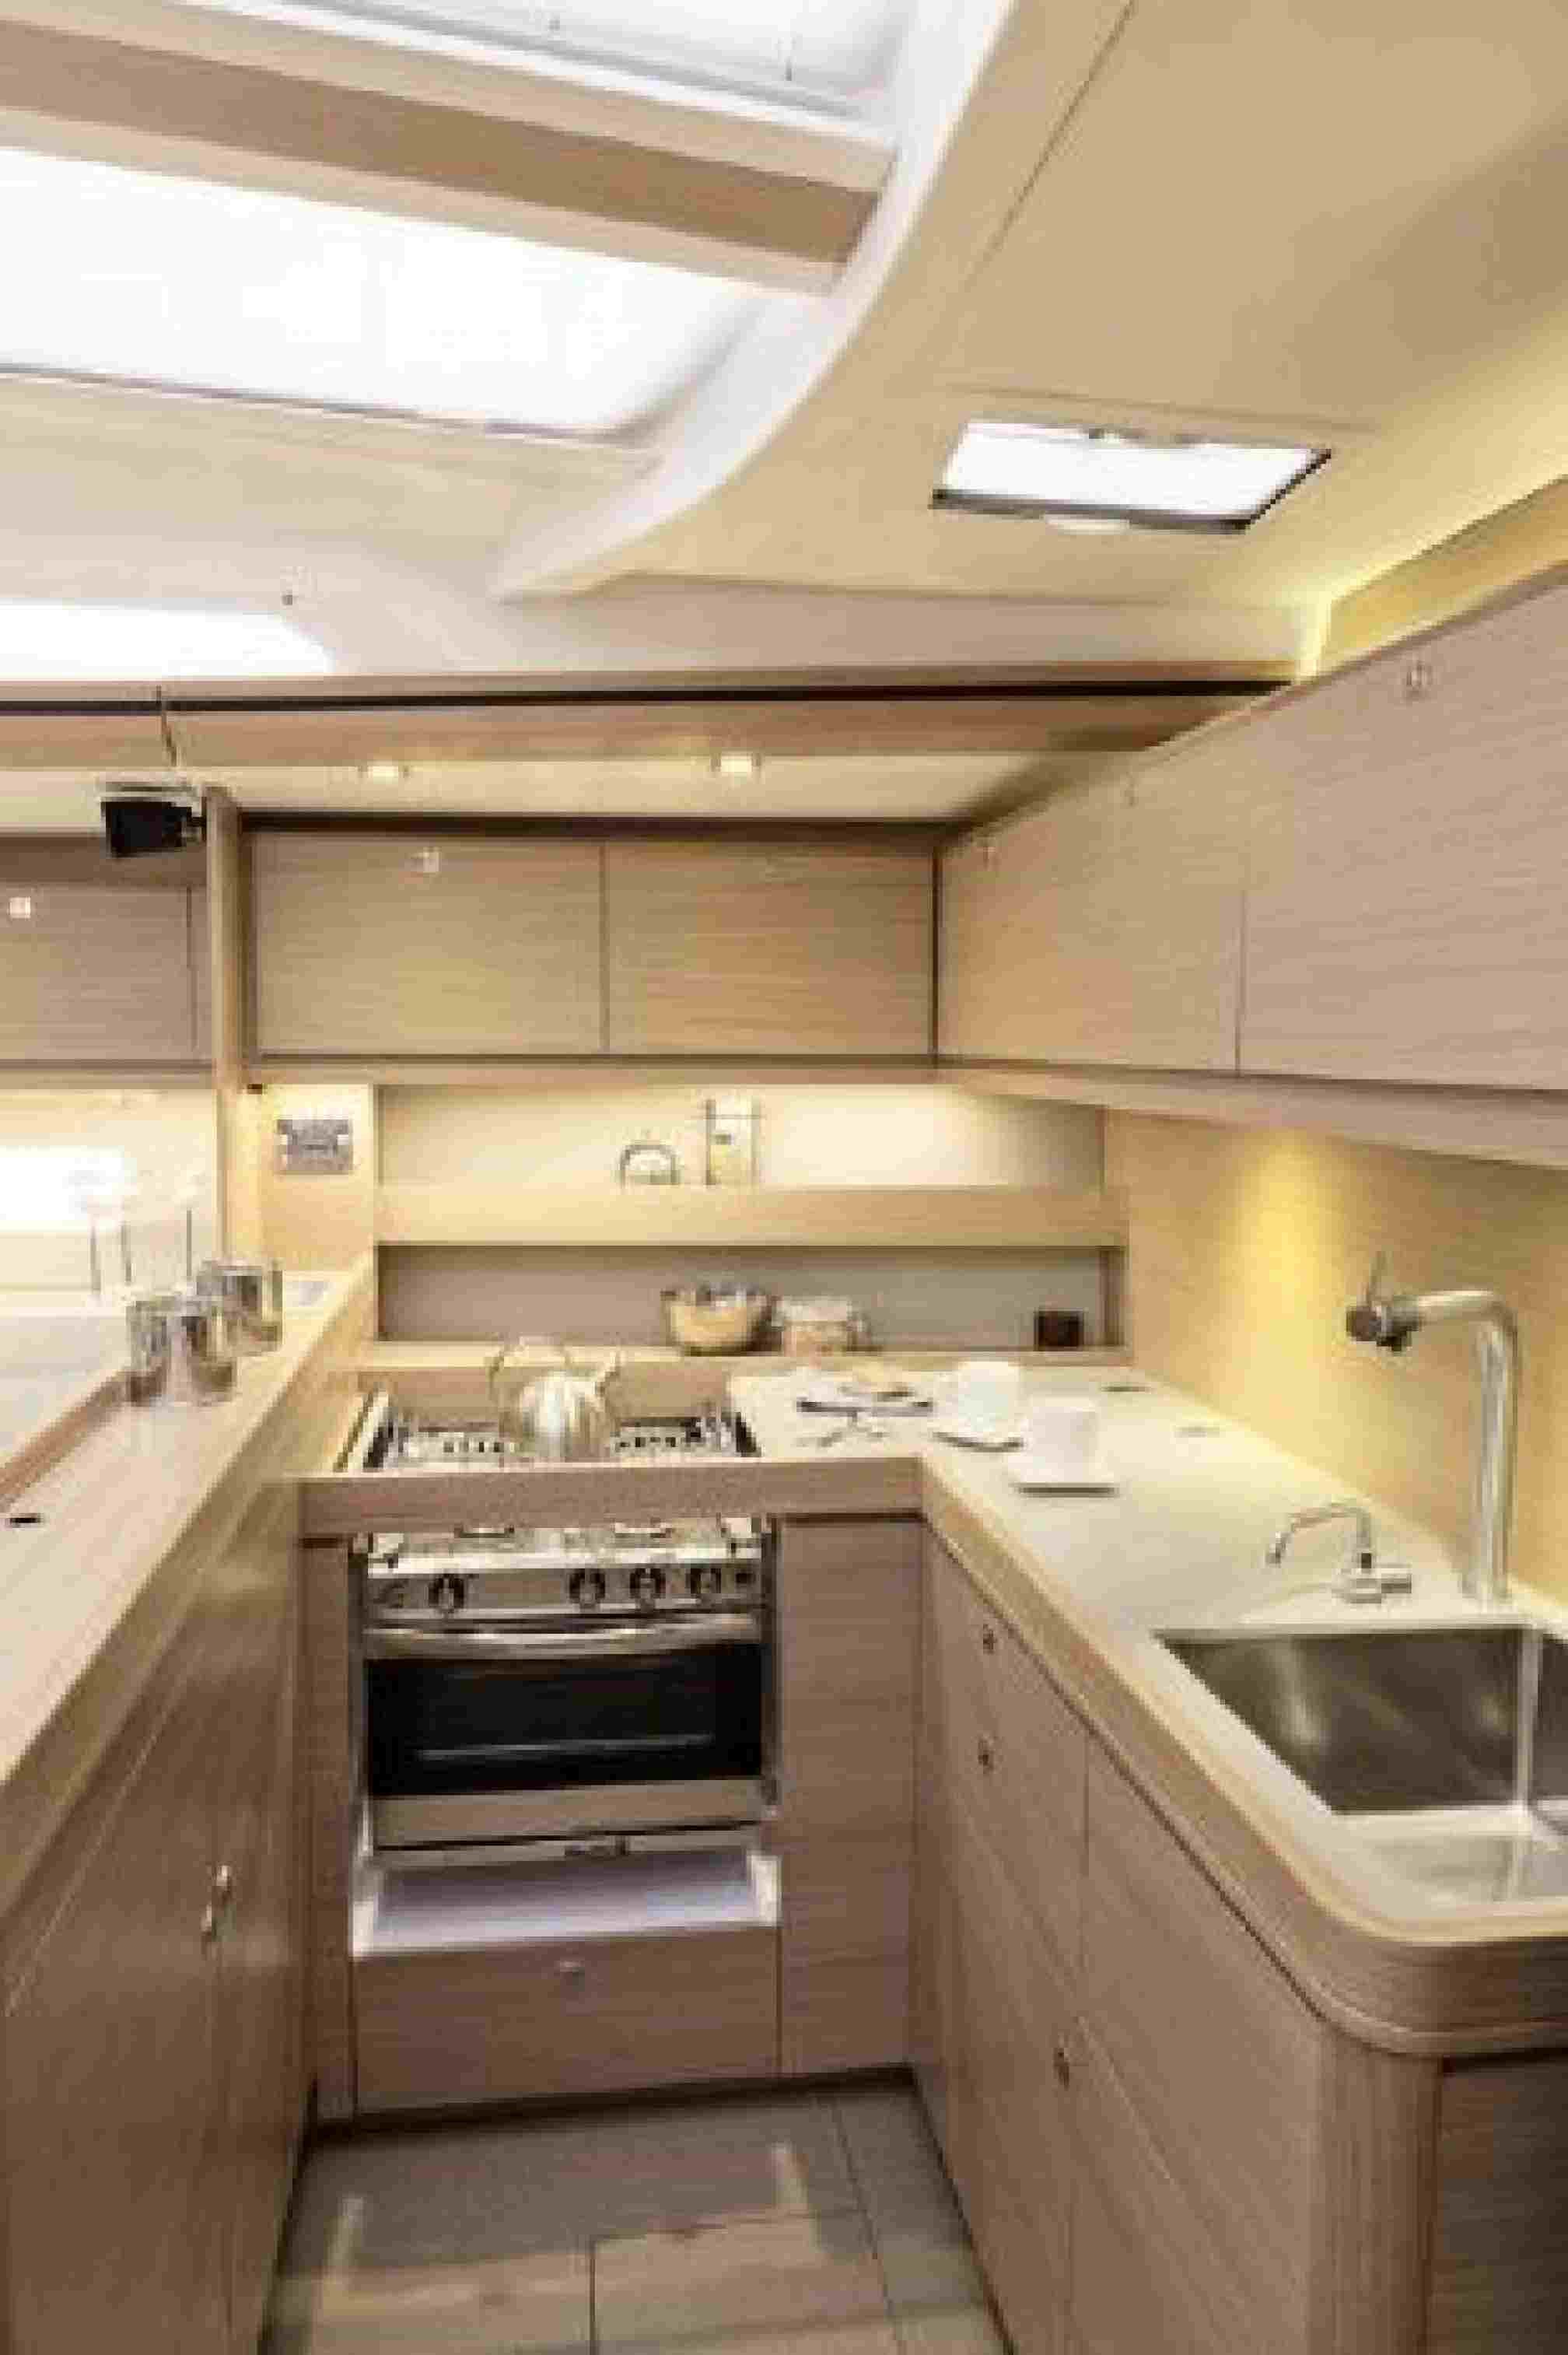 Dufour 560 GL charter sailboat, kitchen